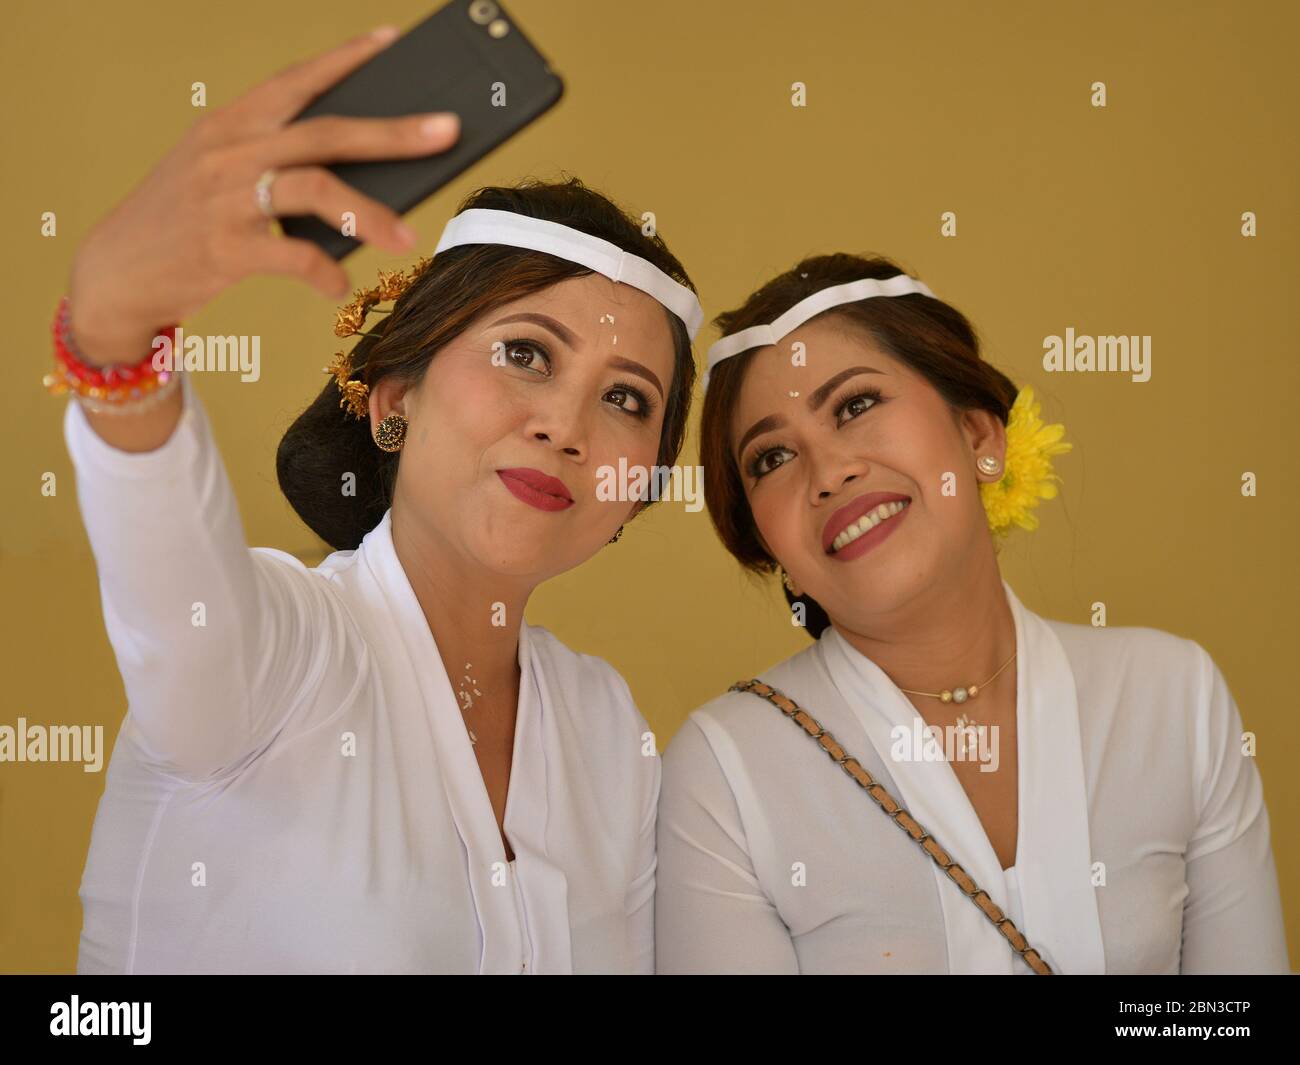 Deux belles femmes balinaises indonésiennes habillées en blanc prennent une photo de la wefie avec leur téléphone cellulaire lors d'une cérémonie religieuse hindoue au temple. Banque D'Images